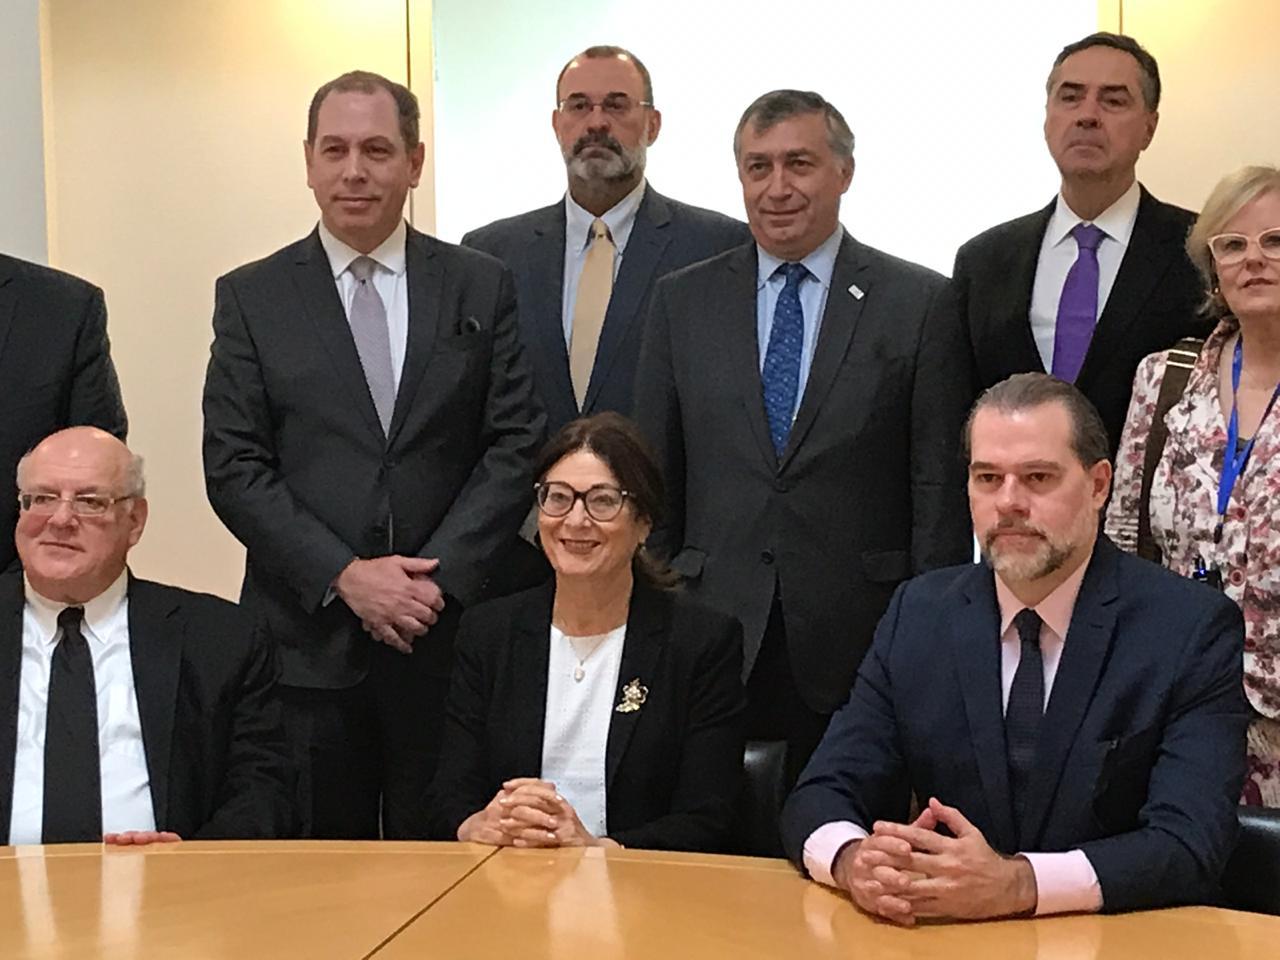 Ministros do Supremo Tribunal Federal (STF) e do Superior Tribunal de Justiça (STJ) visitam a Suprema Corte de Israel - Fundada em 1948, a CONIB – Confederação Israelita do Brasil é o órgão de representação e coordenação política da comunidade judaica brasileira. 